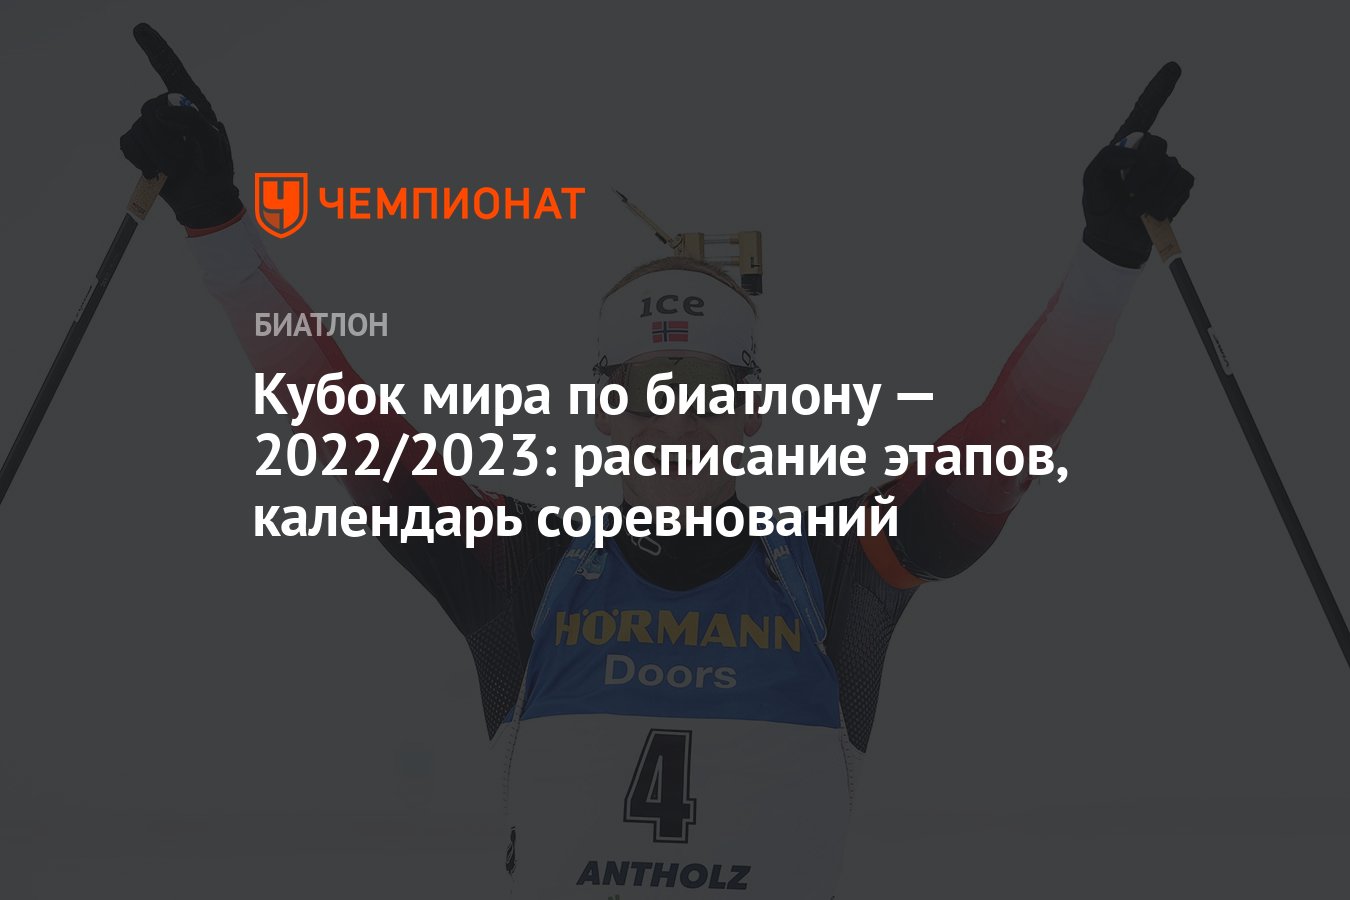 Кубок сотрудничества биатлон расписание 2023.